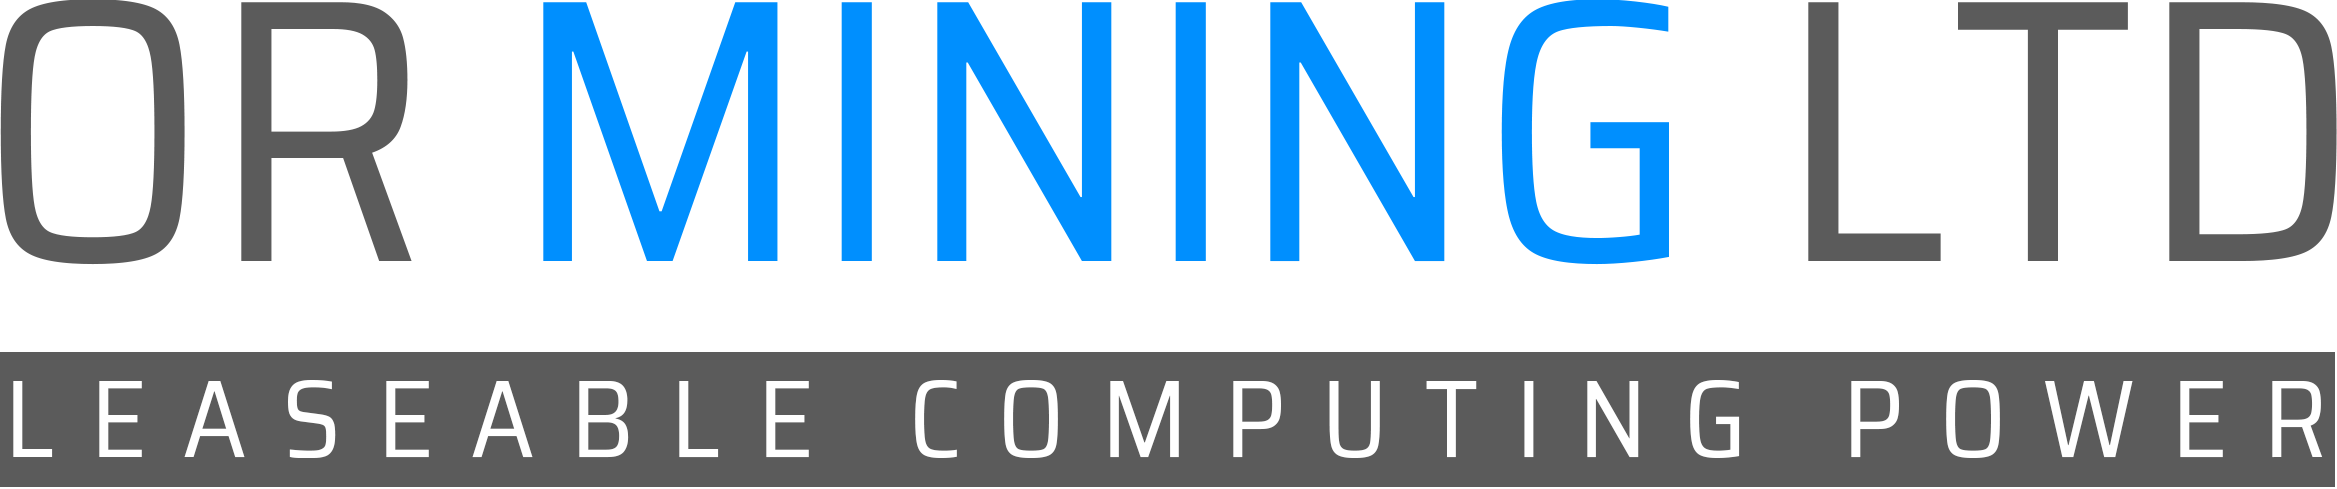 OR Mining logo